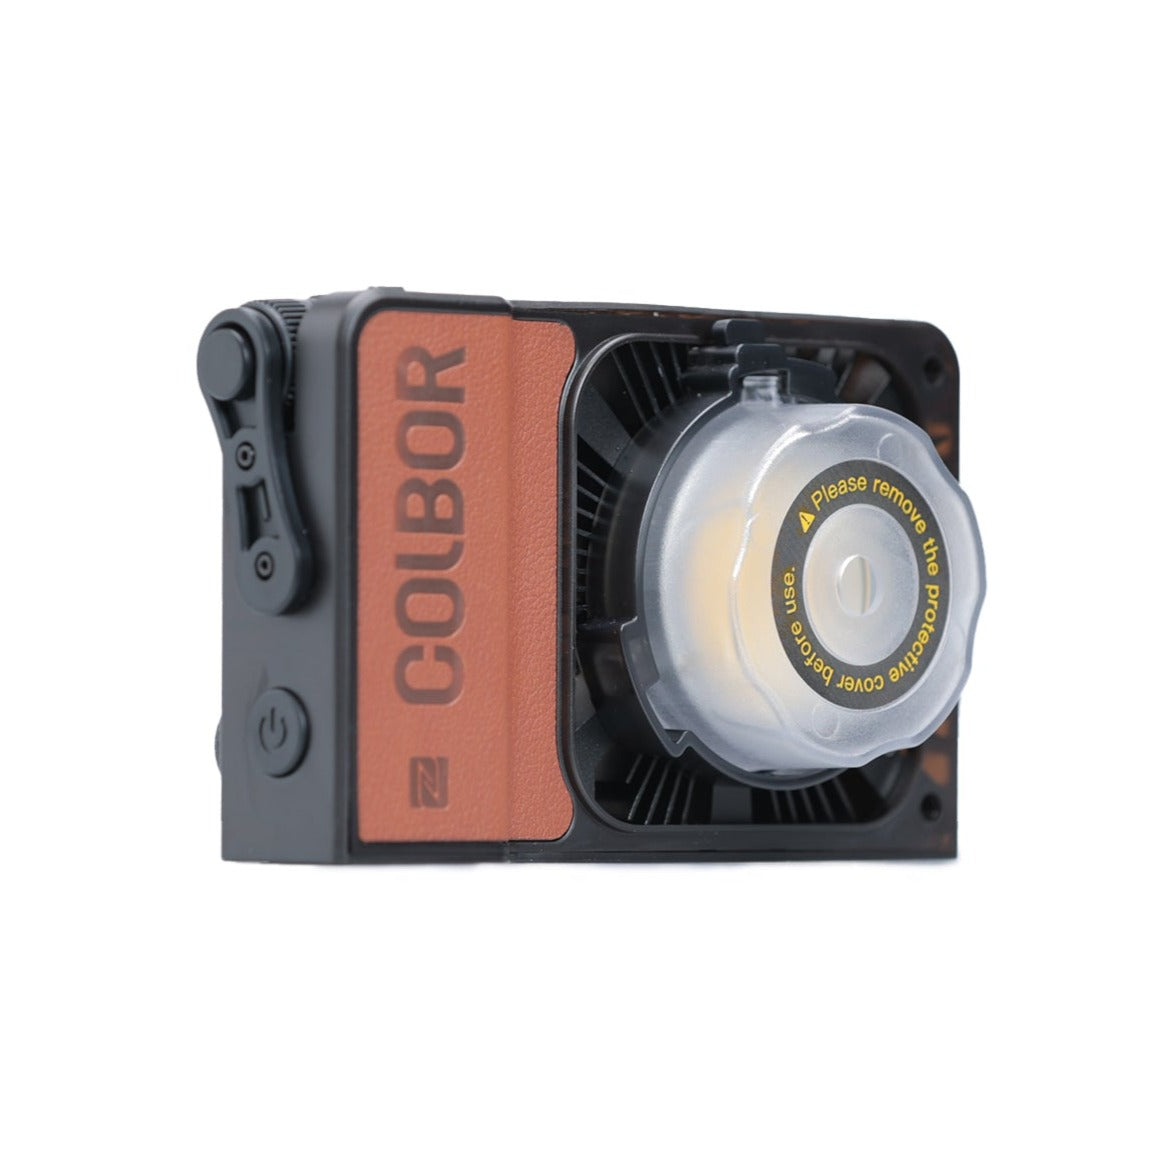 Colbor W60 60W 2700K-6500K Bi-Color Pocket LED Video Light for Photography Video